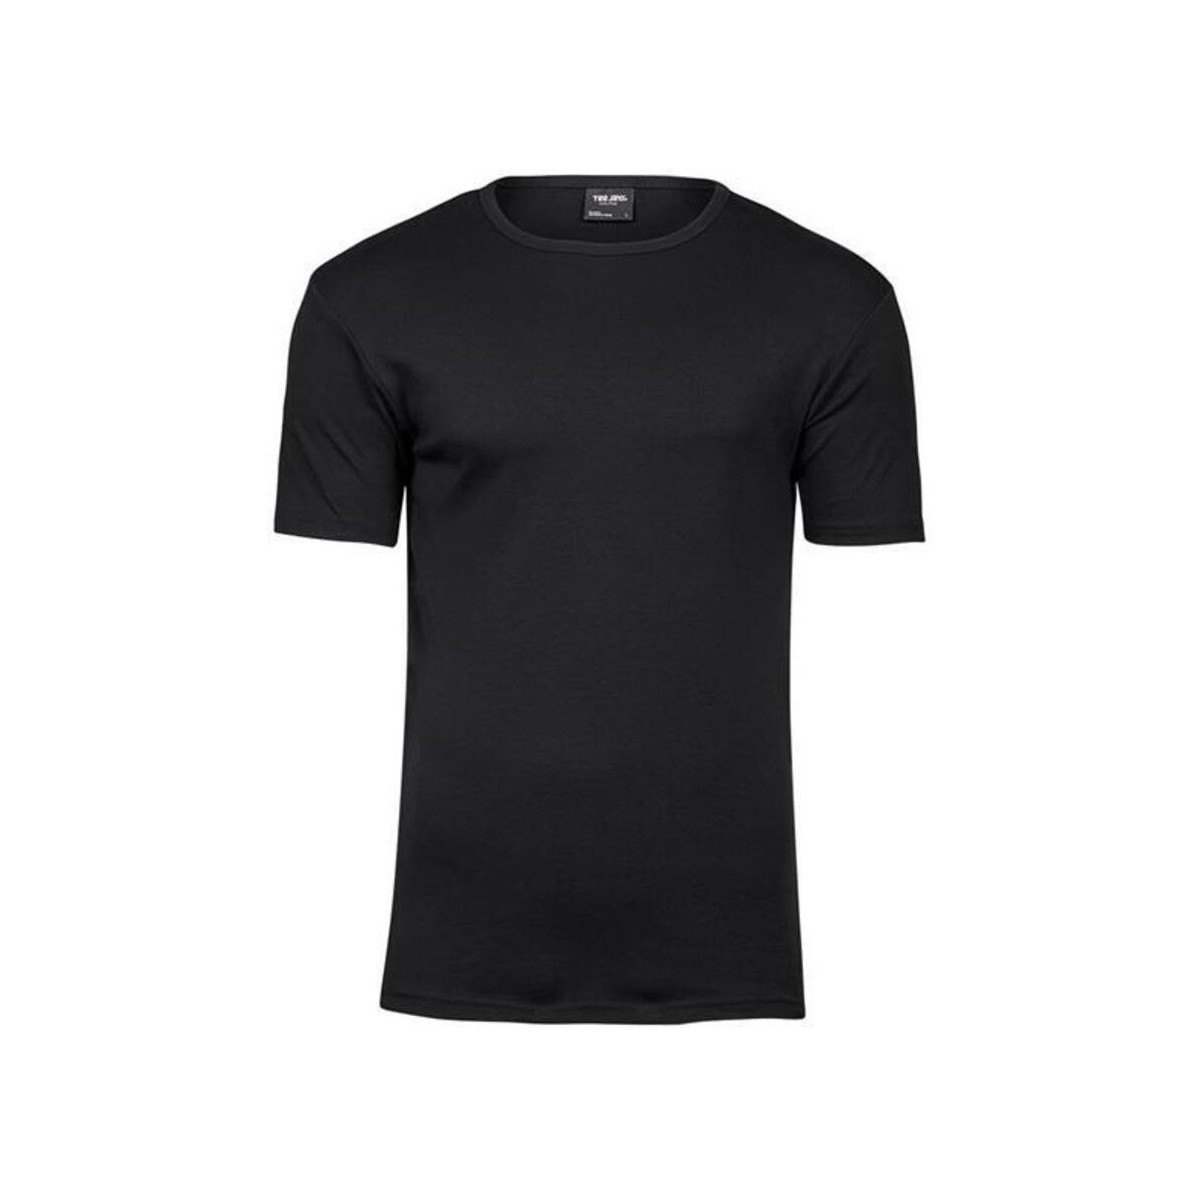 textil Camisetas manga larga Tee Jays Interlock Negro